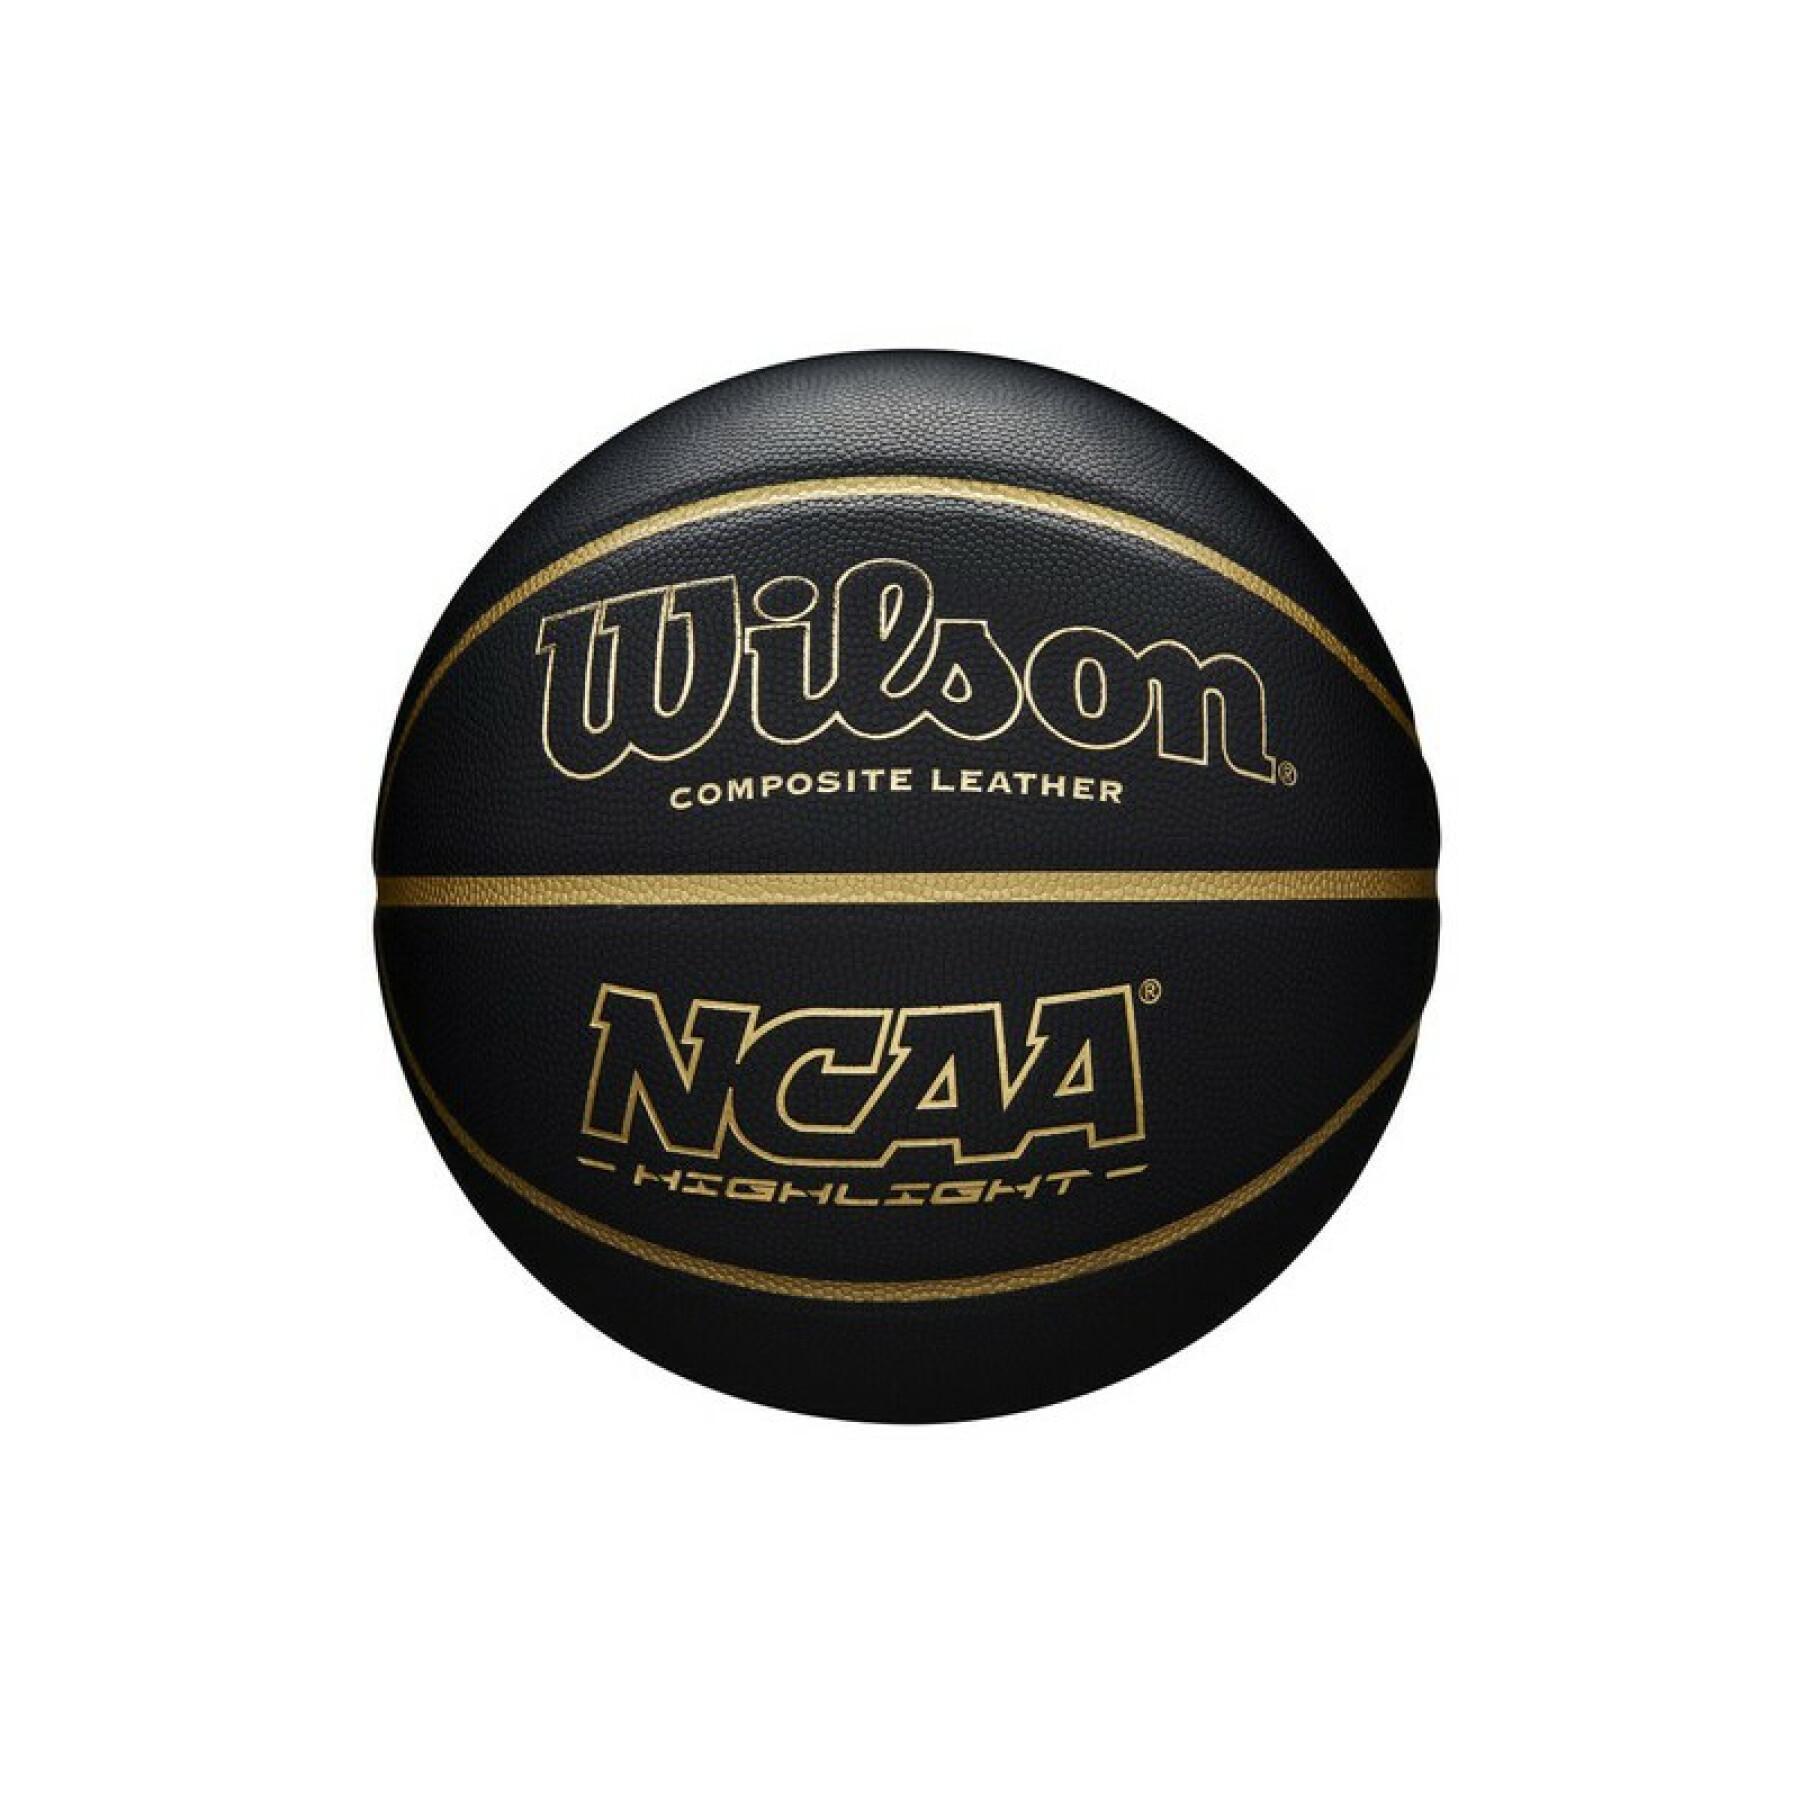 Ballon Wilson NCAA Highlight 295